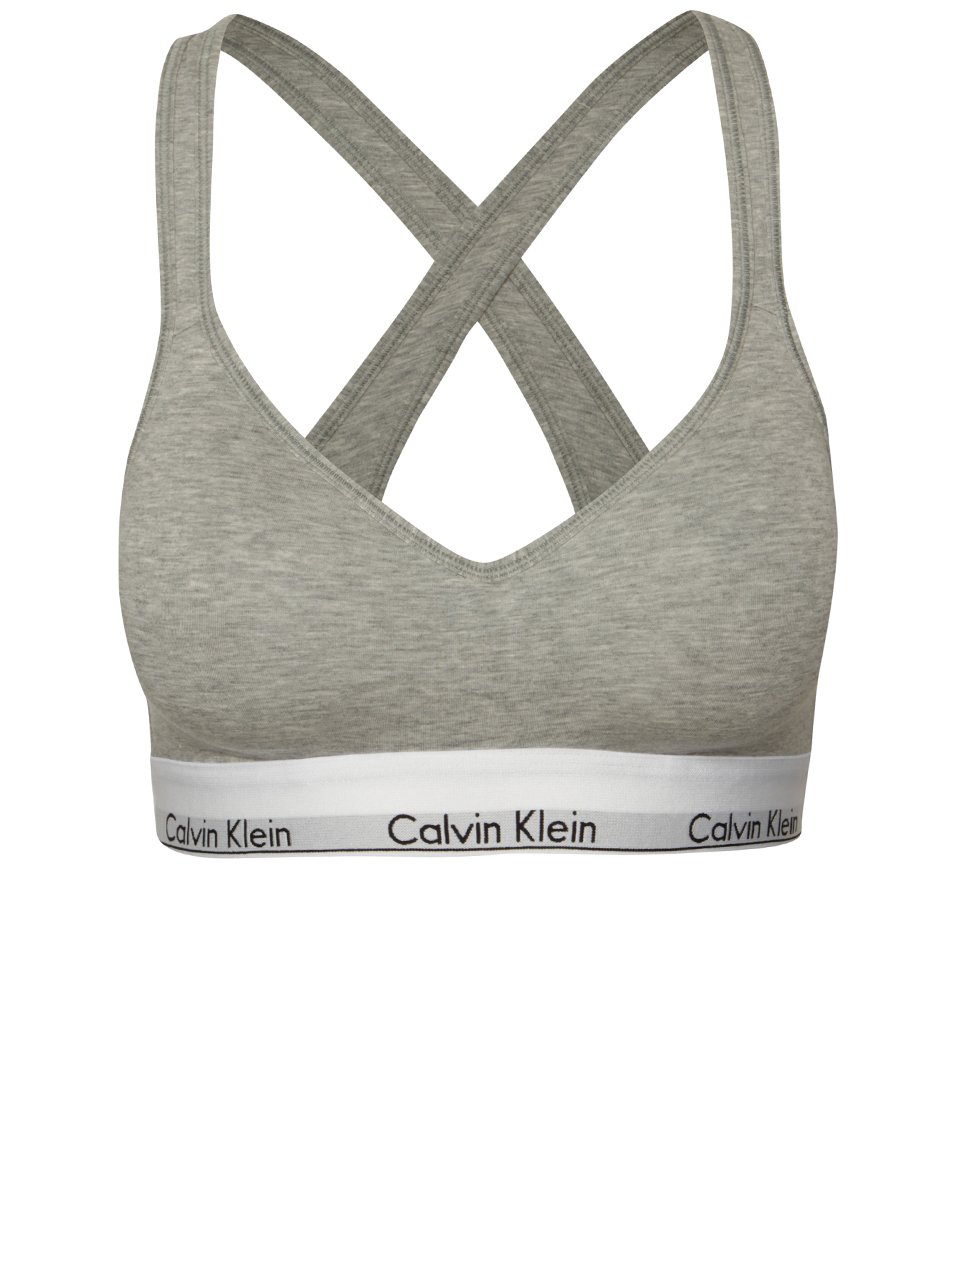 Šedá sportovní podprsenka se širokým spodním lemem Calvin Klein